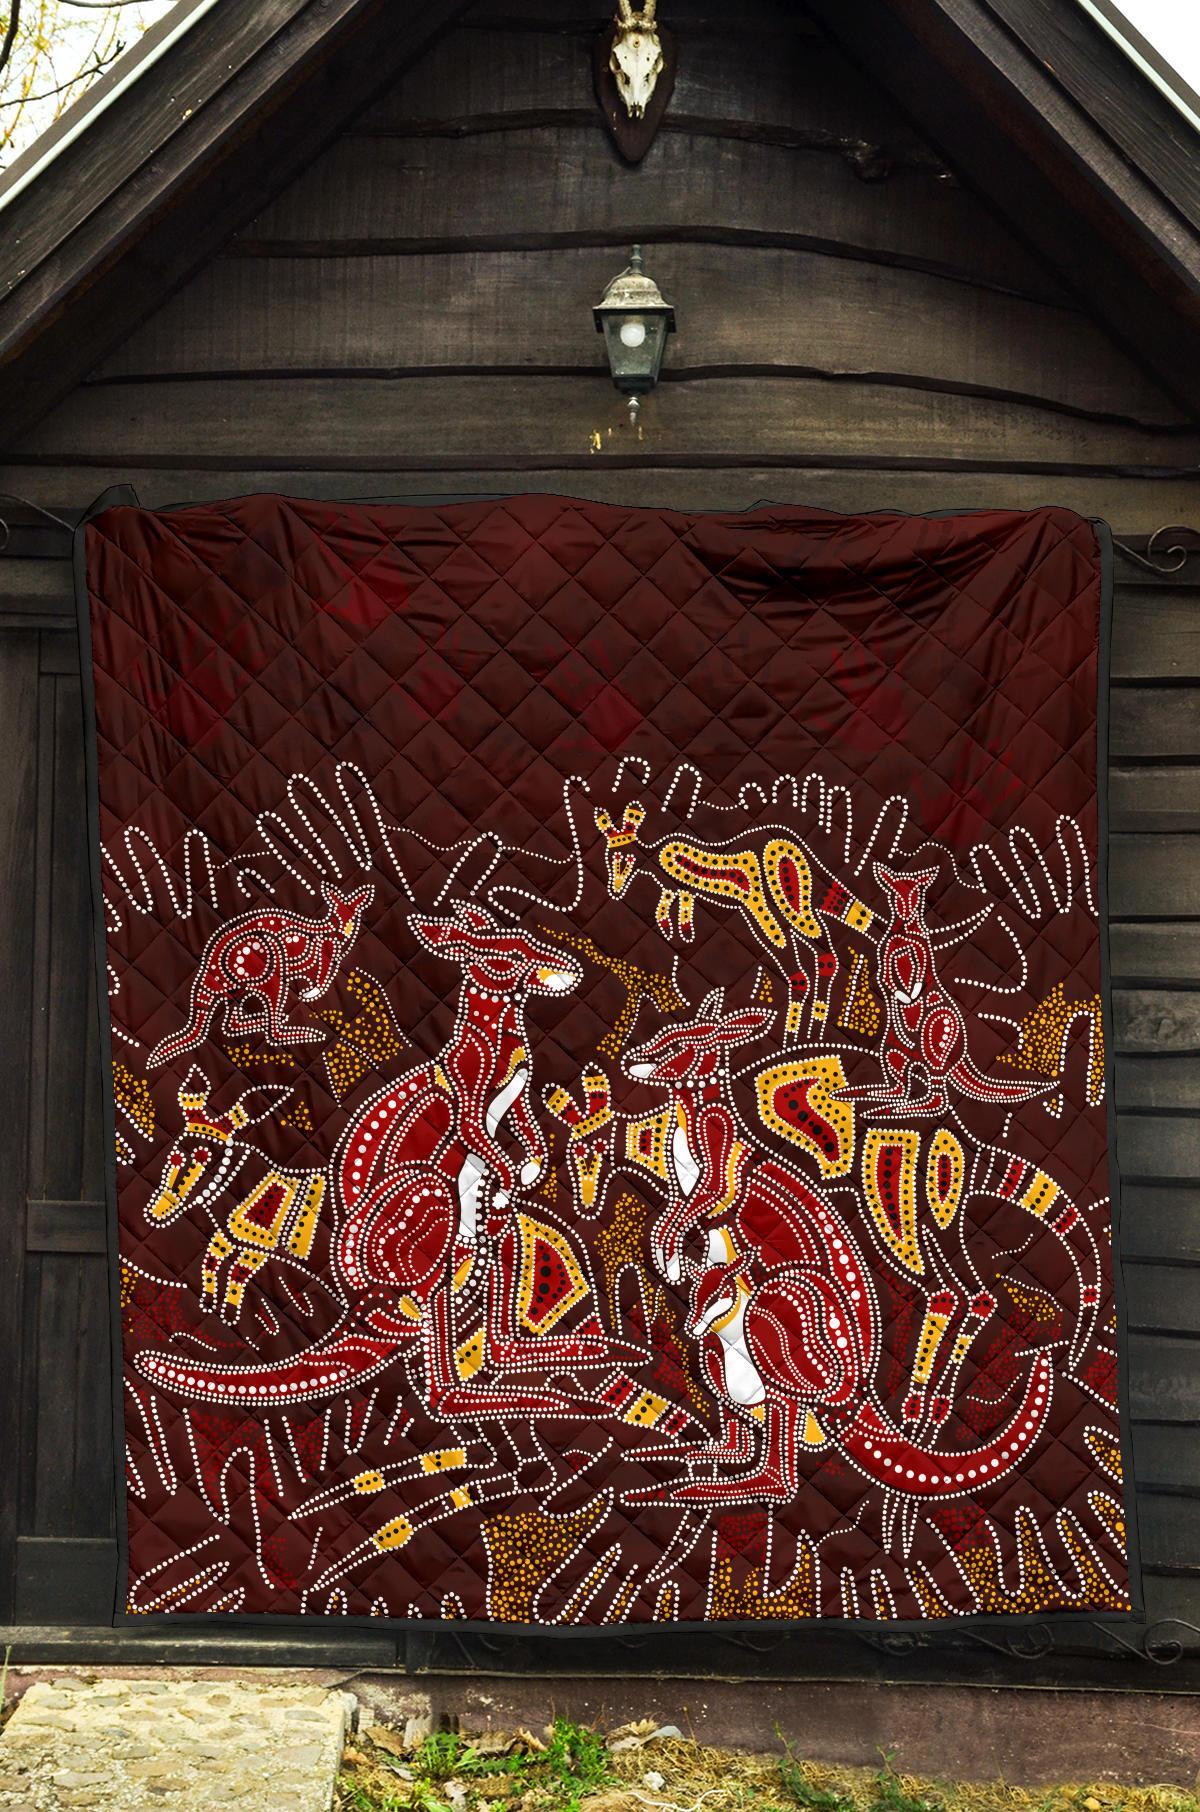 aboriginal-premium-quilt-kangaroo-family-with-hand-art